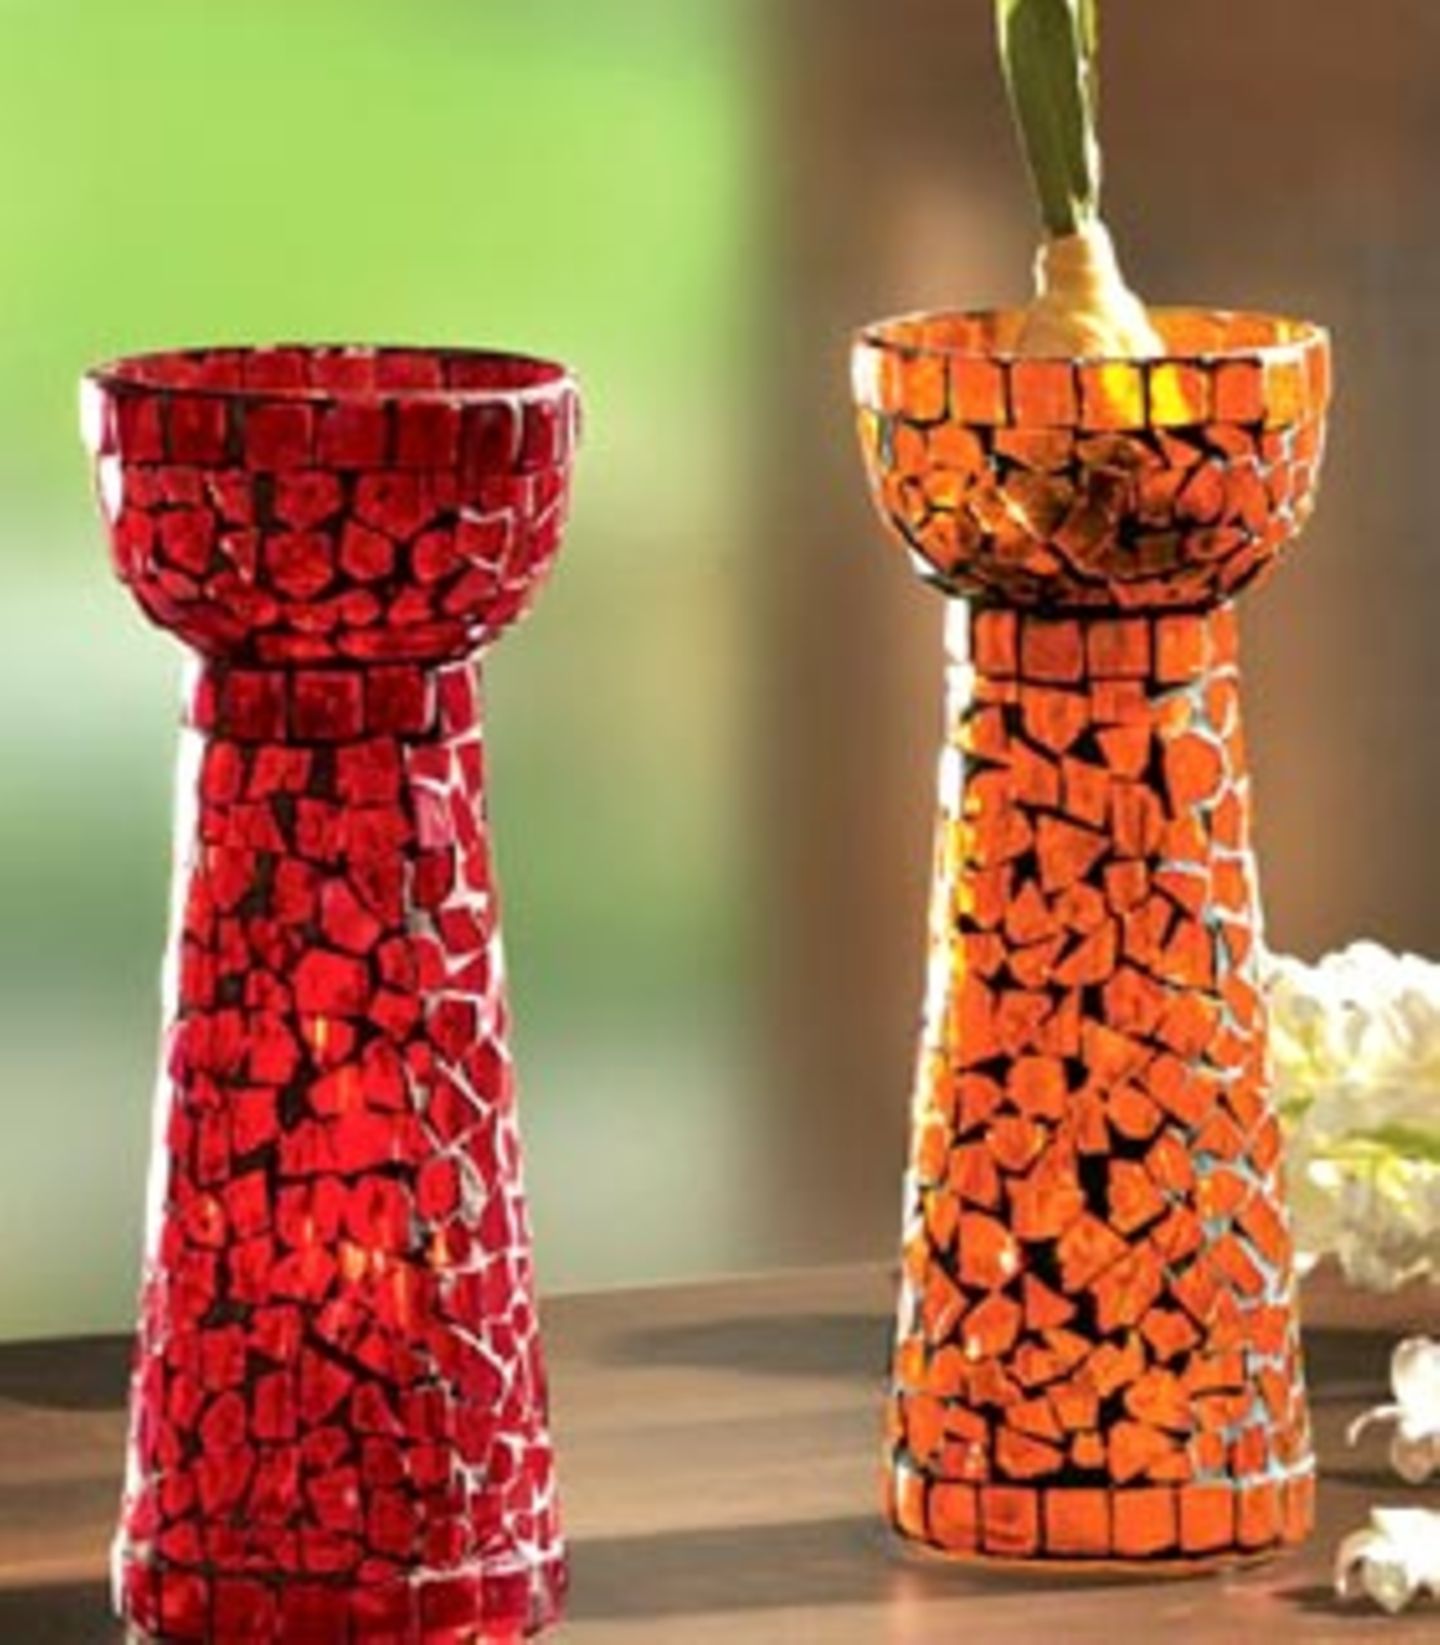 Von den roten und orangen Hyazinthen-Vasen, die Tische, Fensterbänke oder Kommoden schmücken, kann man seinen Blick so schnell nicht mehr wenden. Diesen würdigen Platz für die beliebte Frühlingsbotin Hyazinthe macht das handgefertigte Glasmosaik so besonders. Und damit sich eine Pflanze nicht so einsam fühlt, gibts die Vasen gleich im 2er-Set. Detailinformation und Bestellmöglichkeit